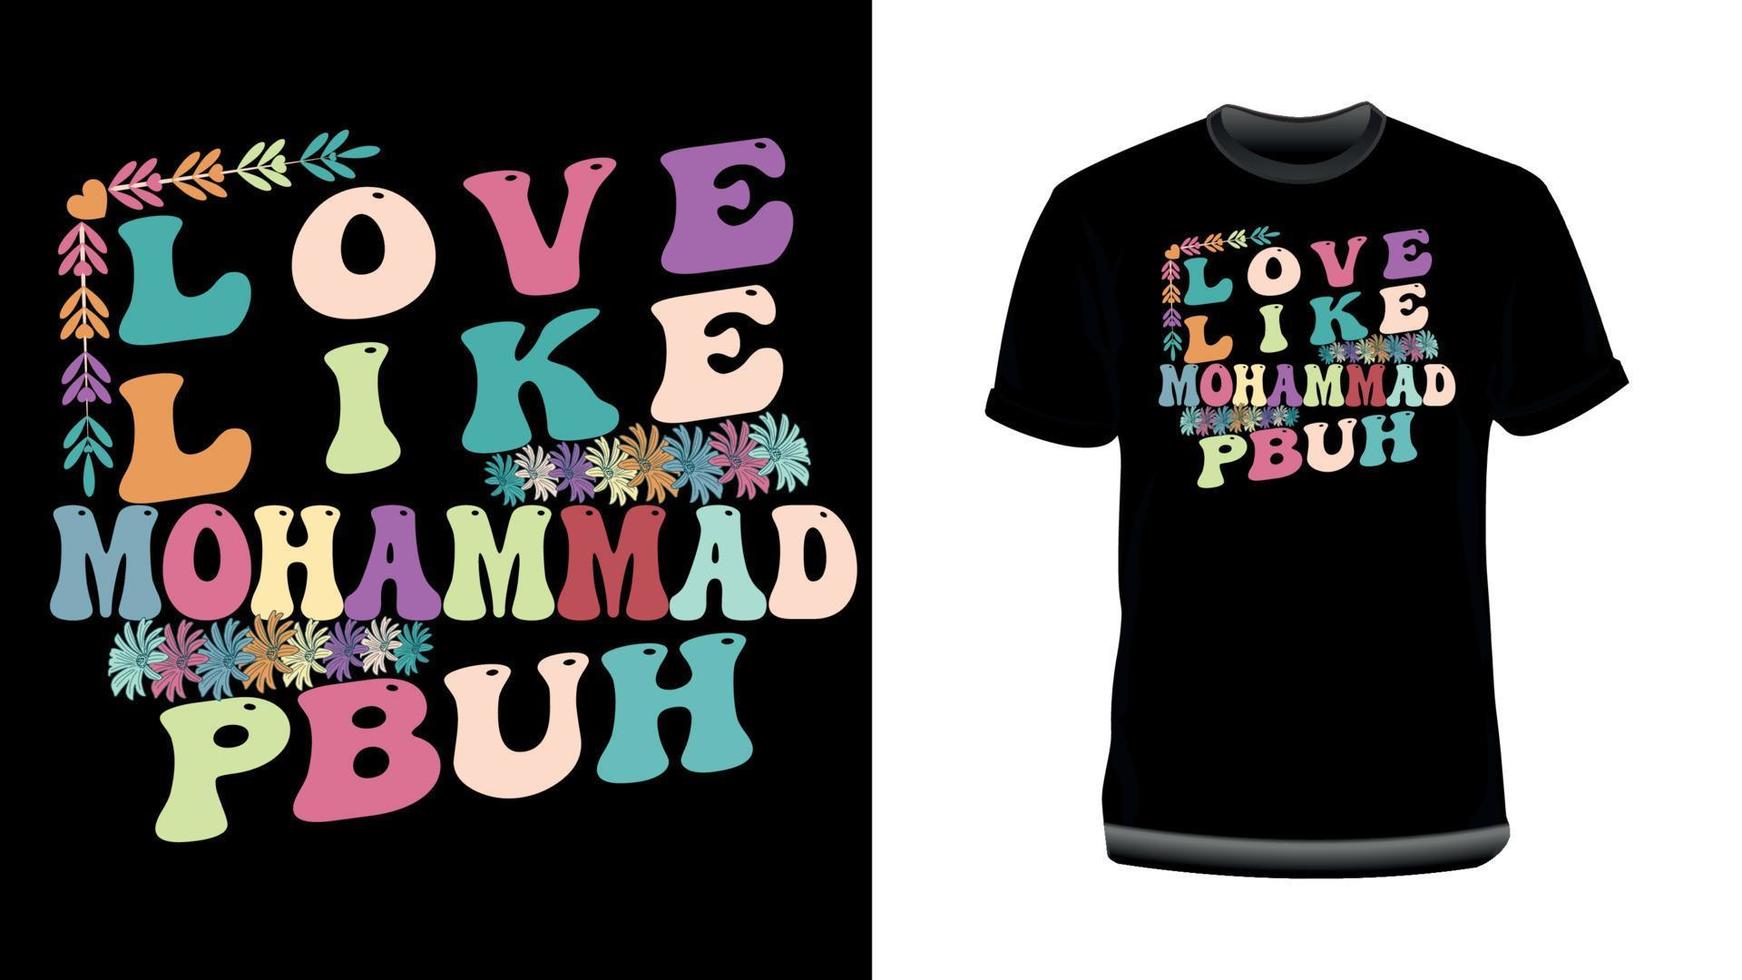 kärlek, tycka om, mohammad- islamic typografi t-shirt design för muslim vektor